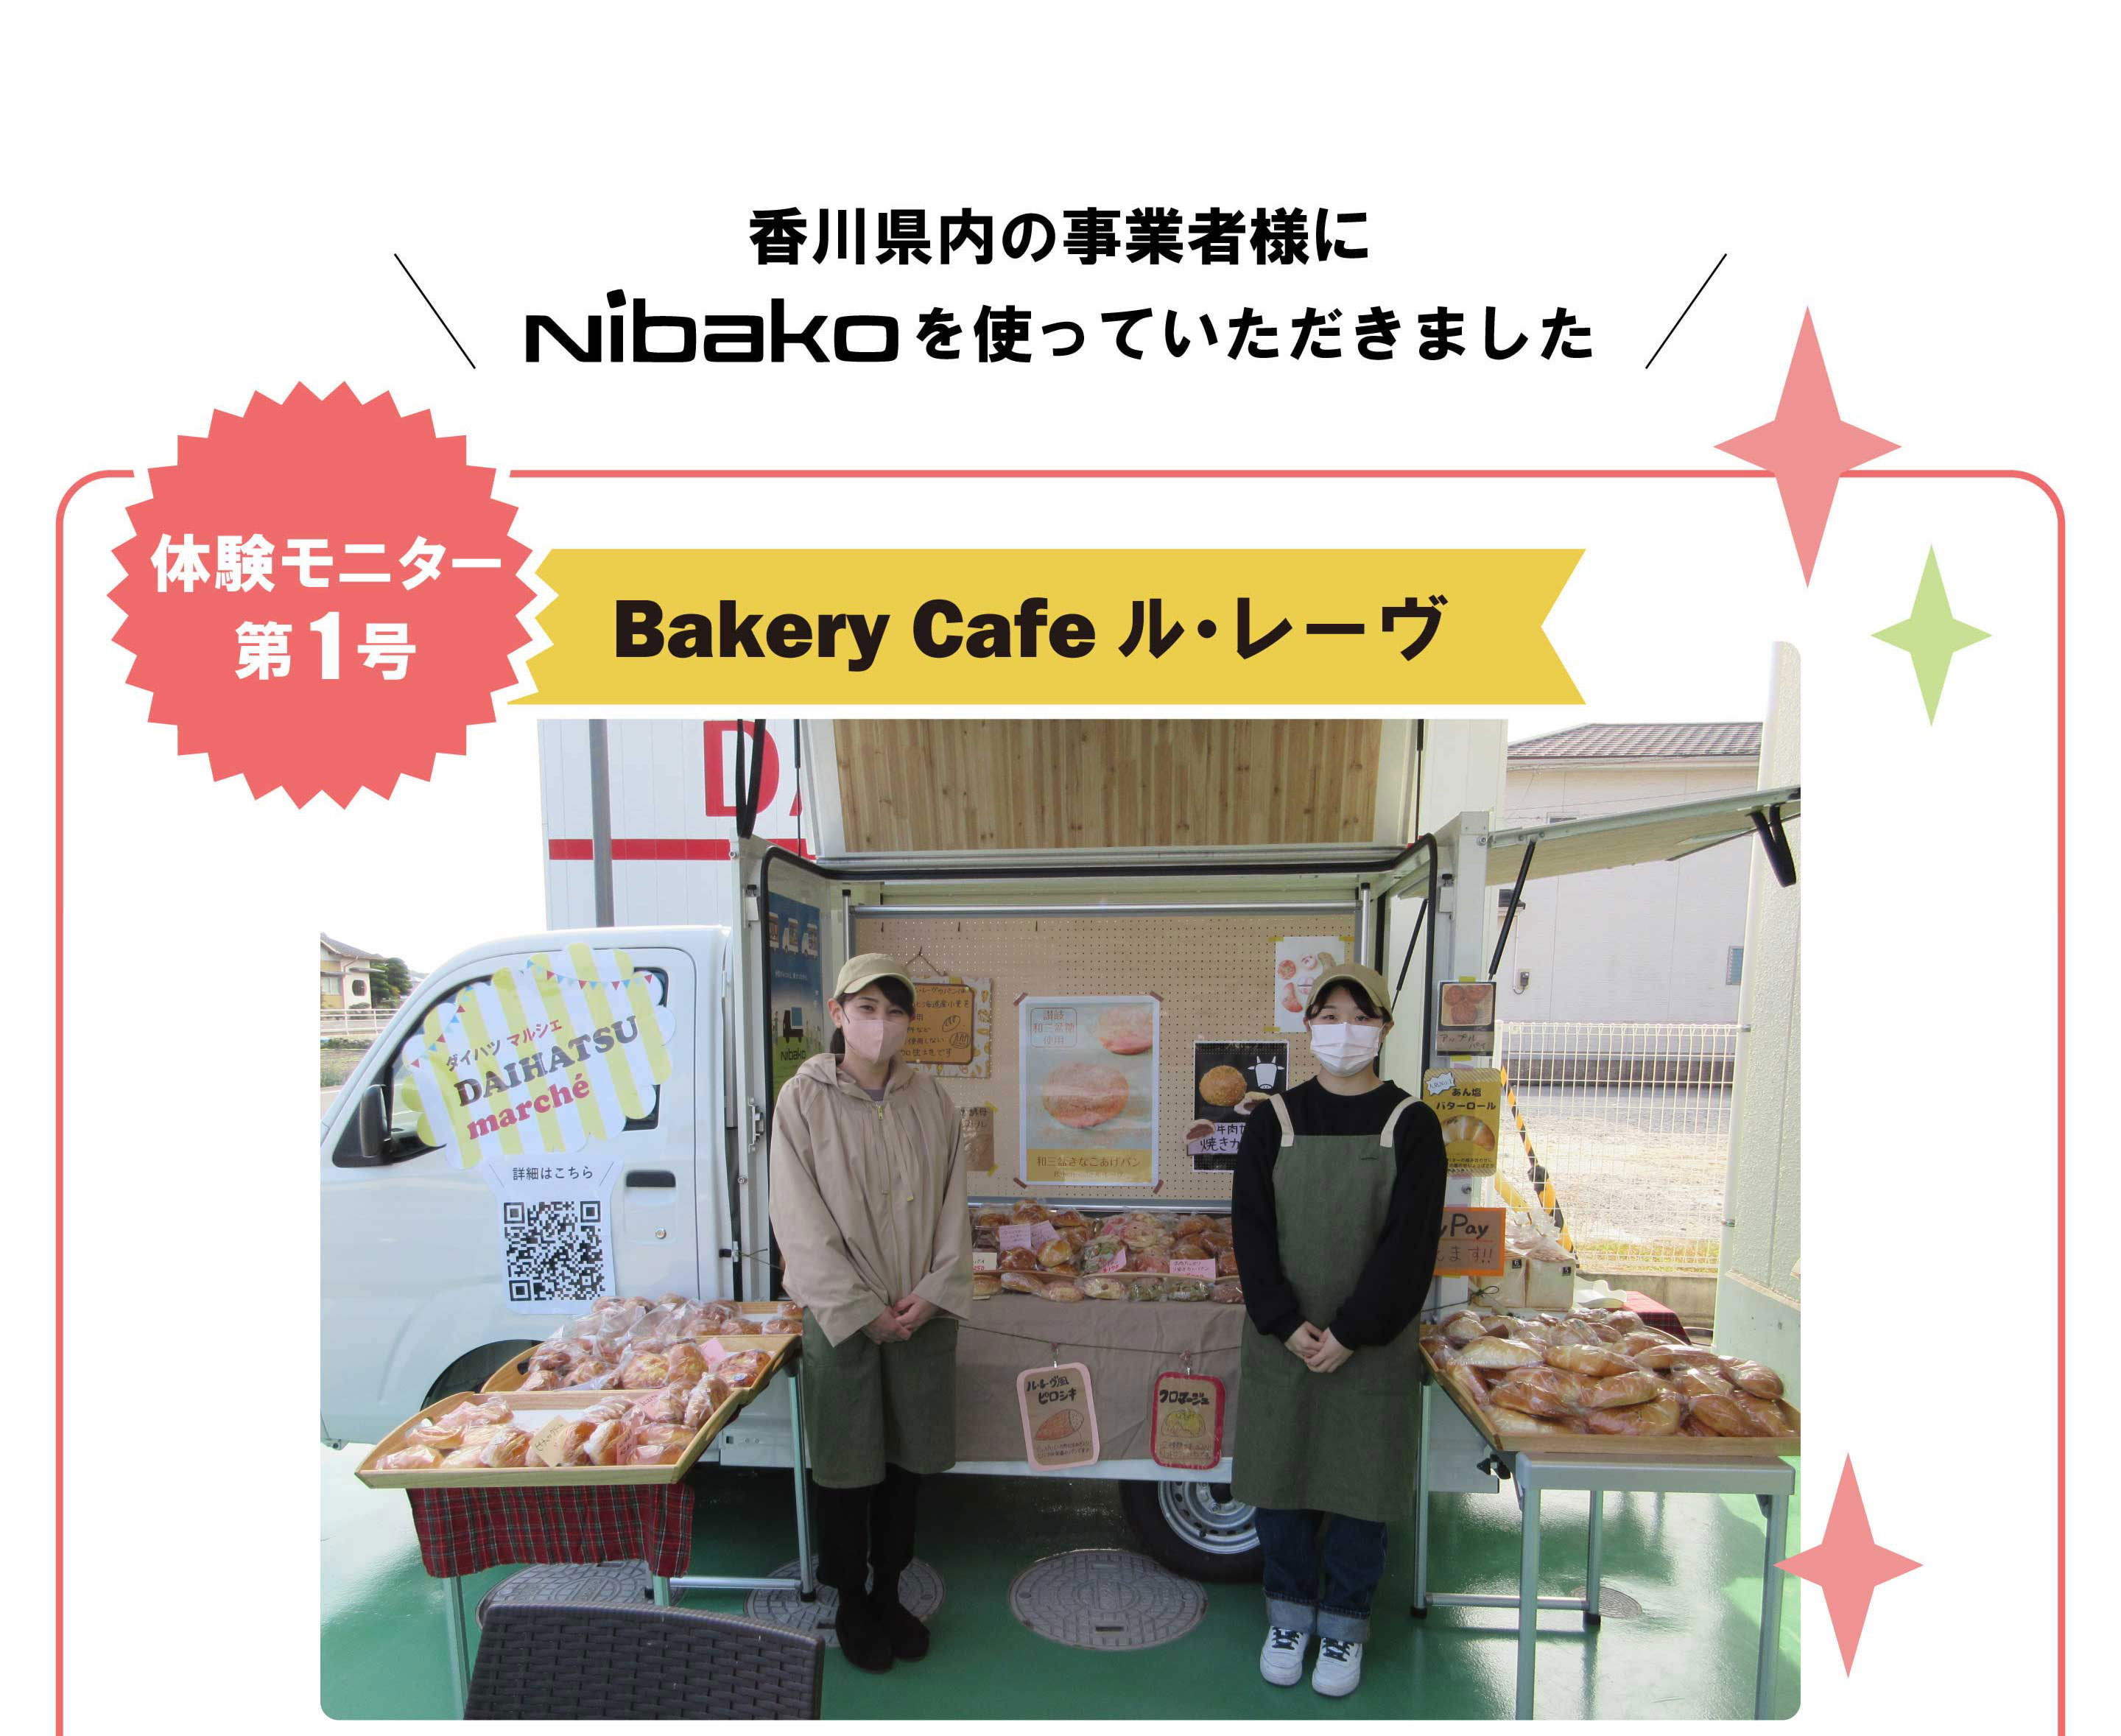 香川県内の事業者様にNibakoを使っていただきました